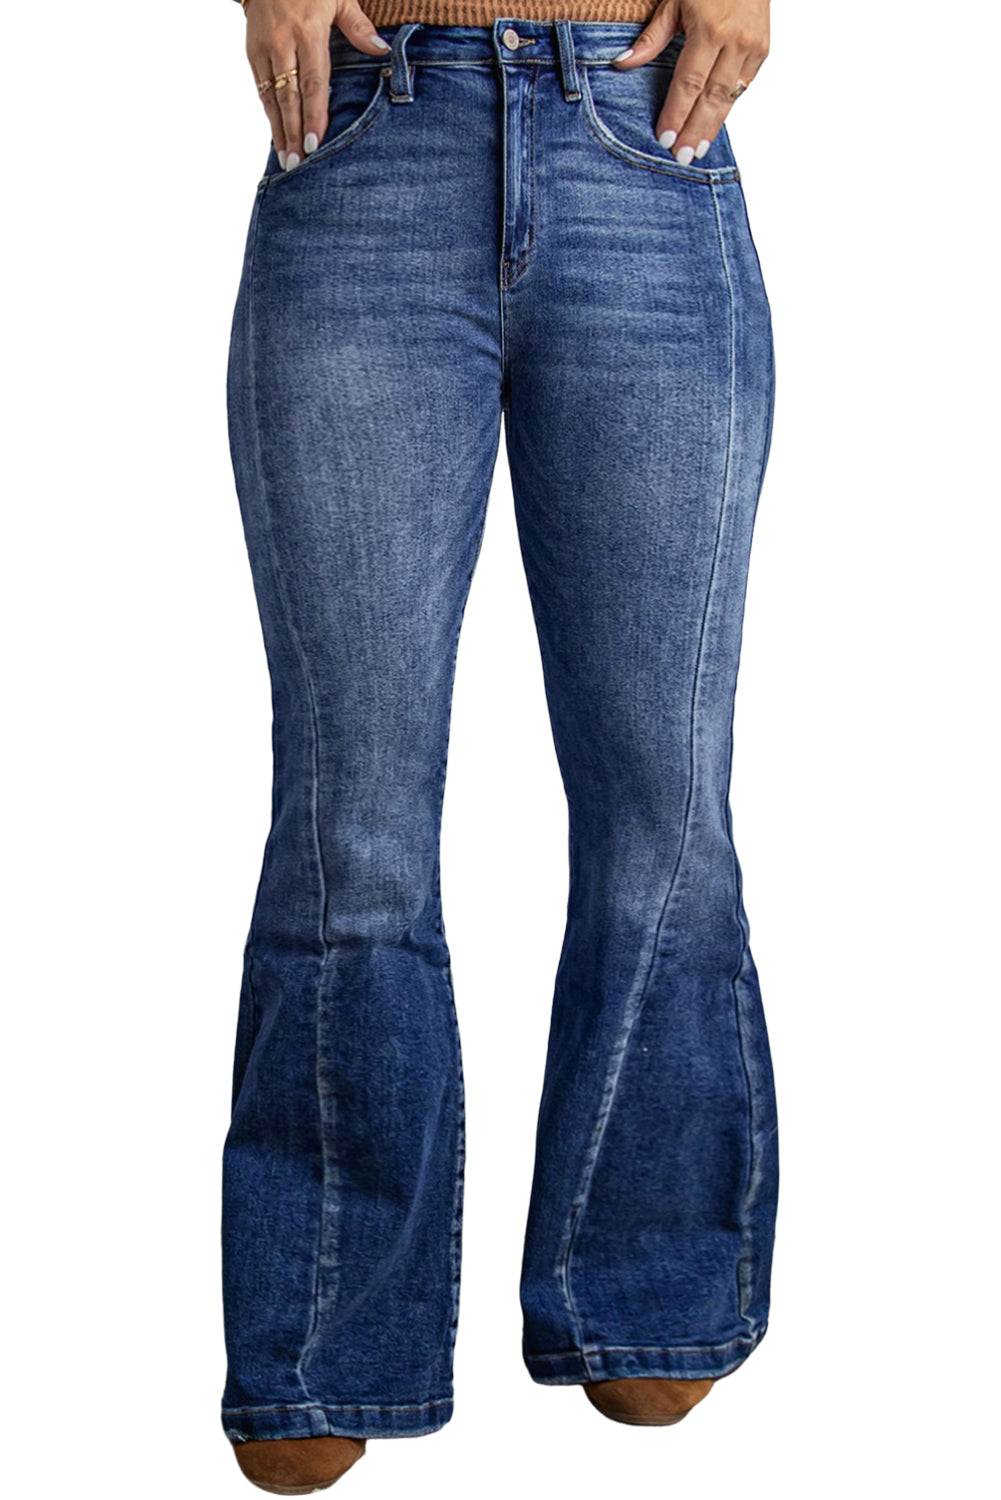 Dunkelblaue, ausgewaschene Flare-Jeans in Übergröße mit Nähten